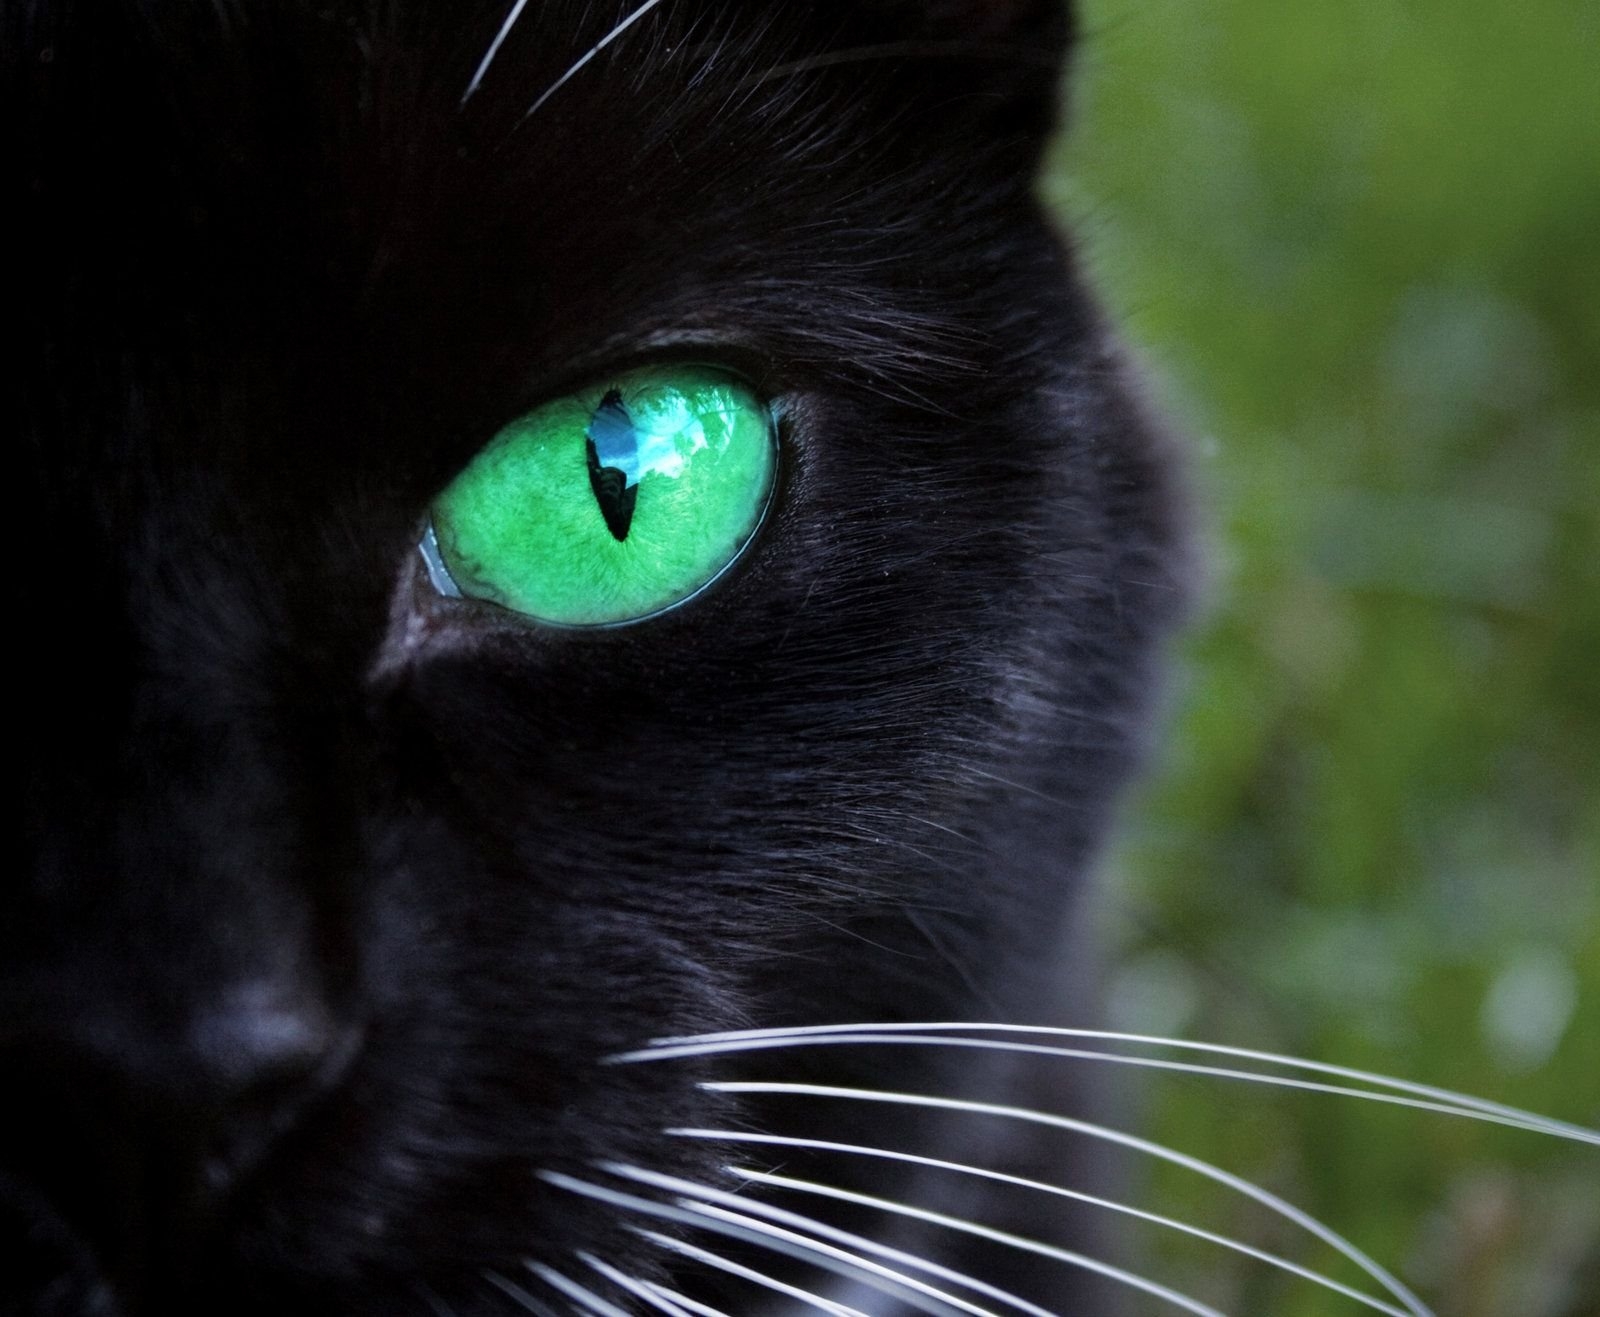 Красивые черные кошки с зелеными глазами - картинки и фото koshka.top